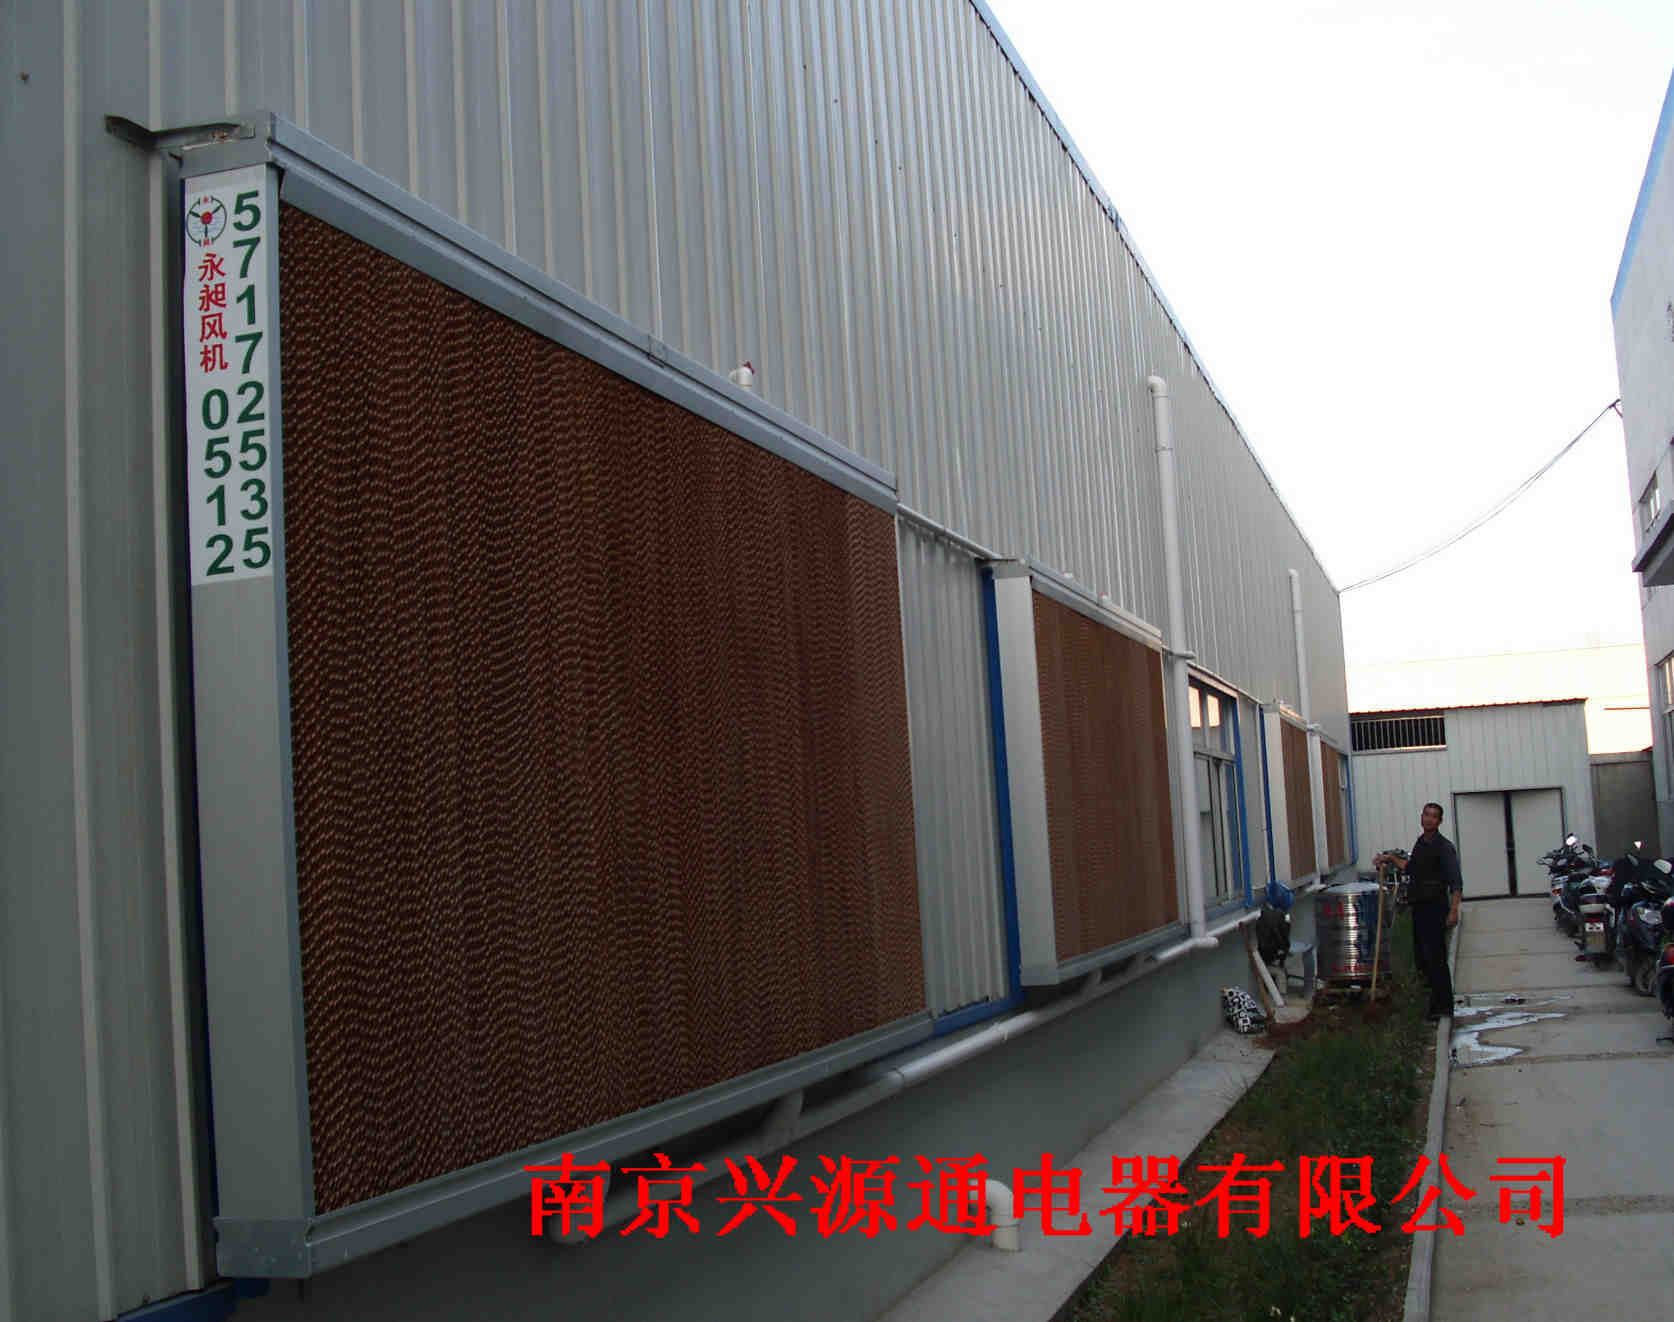 工厂降温设备南京兴源通电器有有限公司